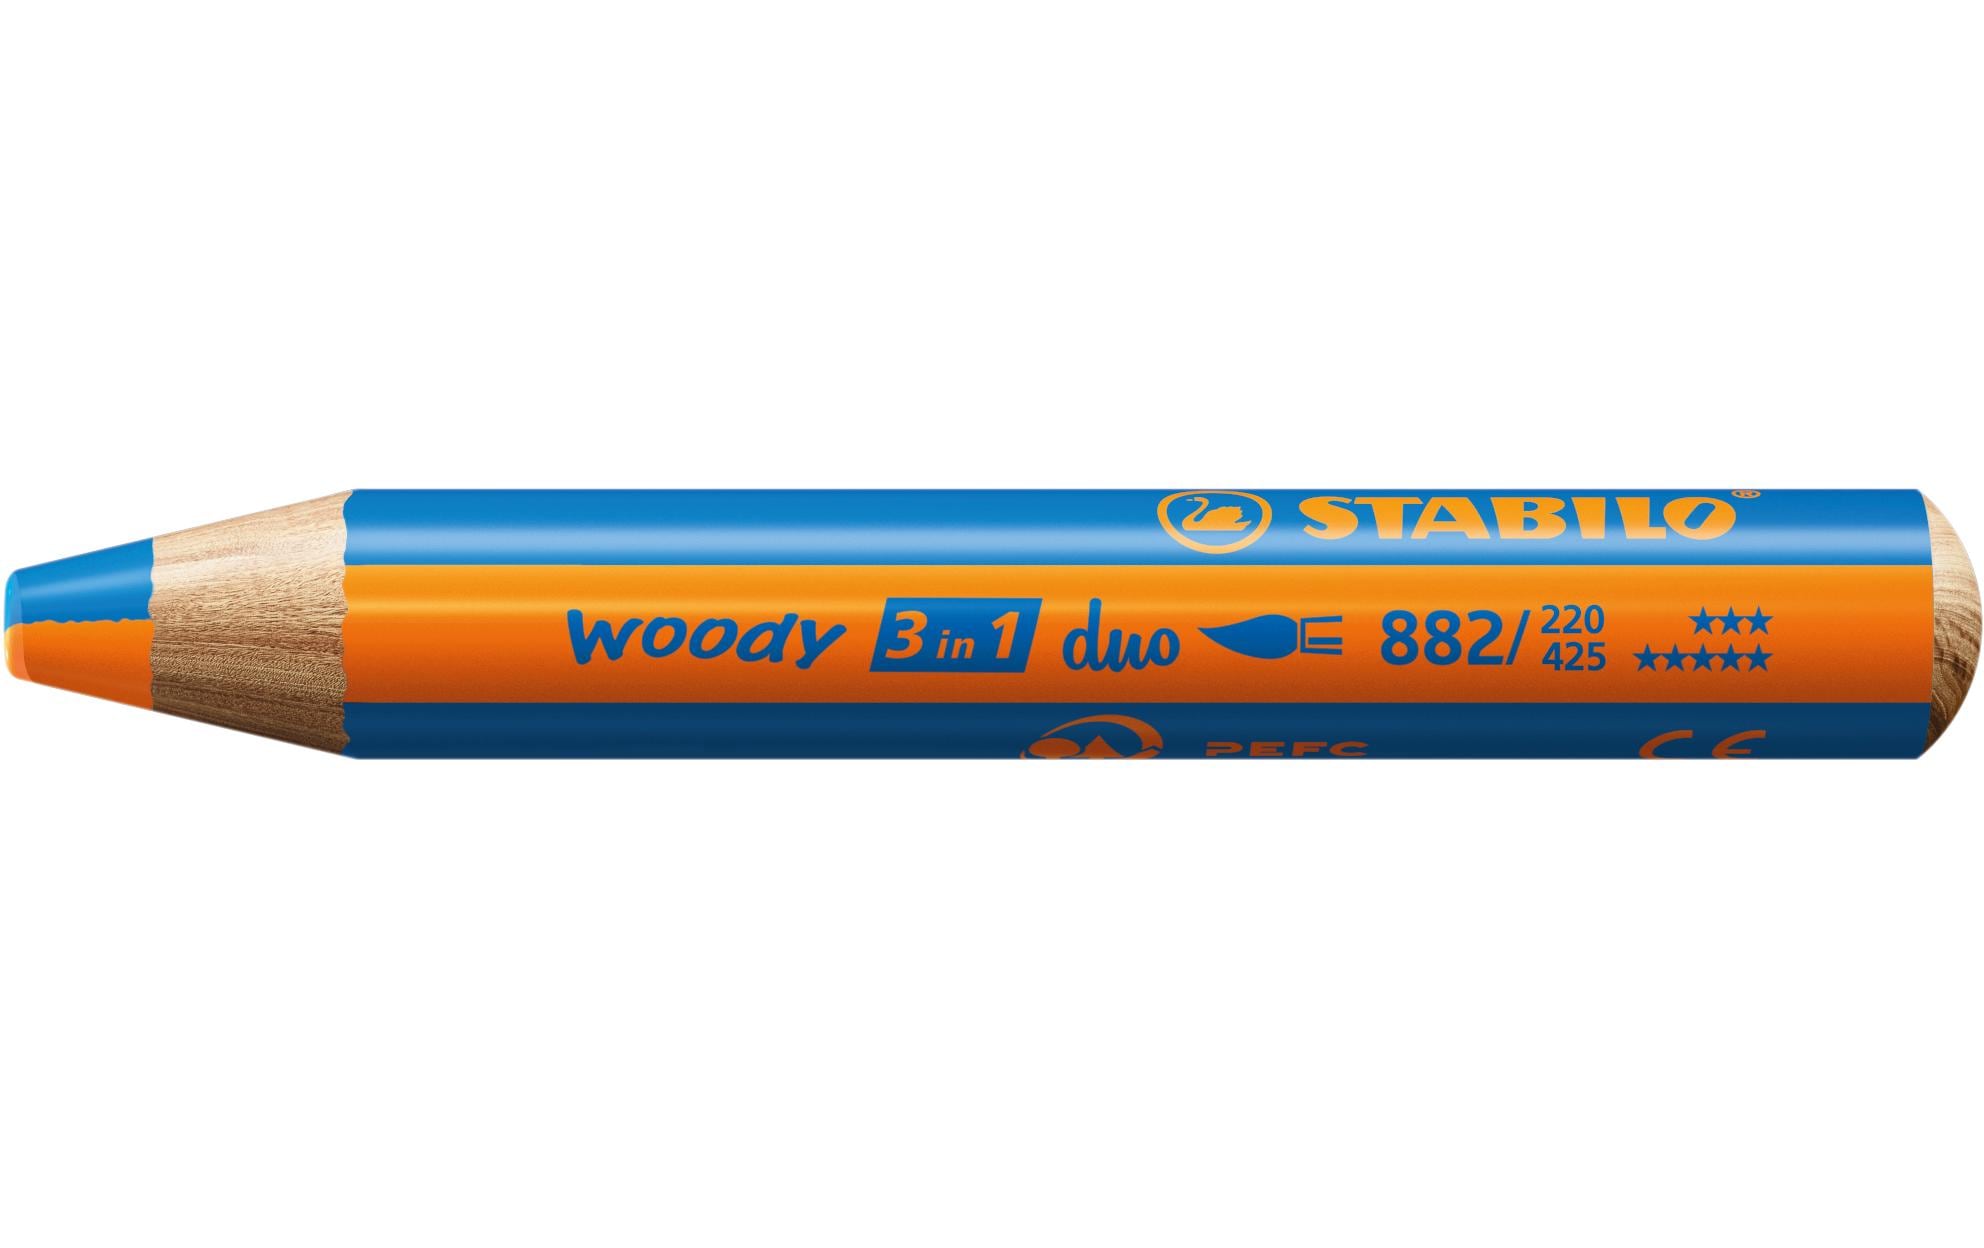 STABILO Wachsmalstifte Woody 3 in 1 duo Orange / Blau